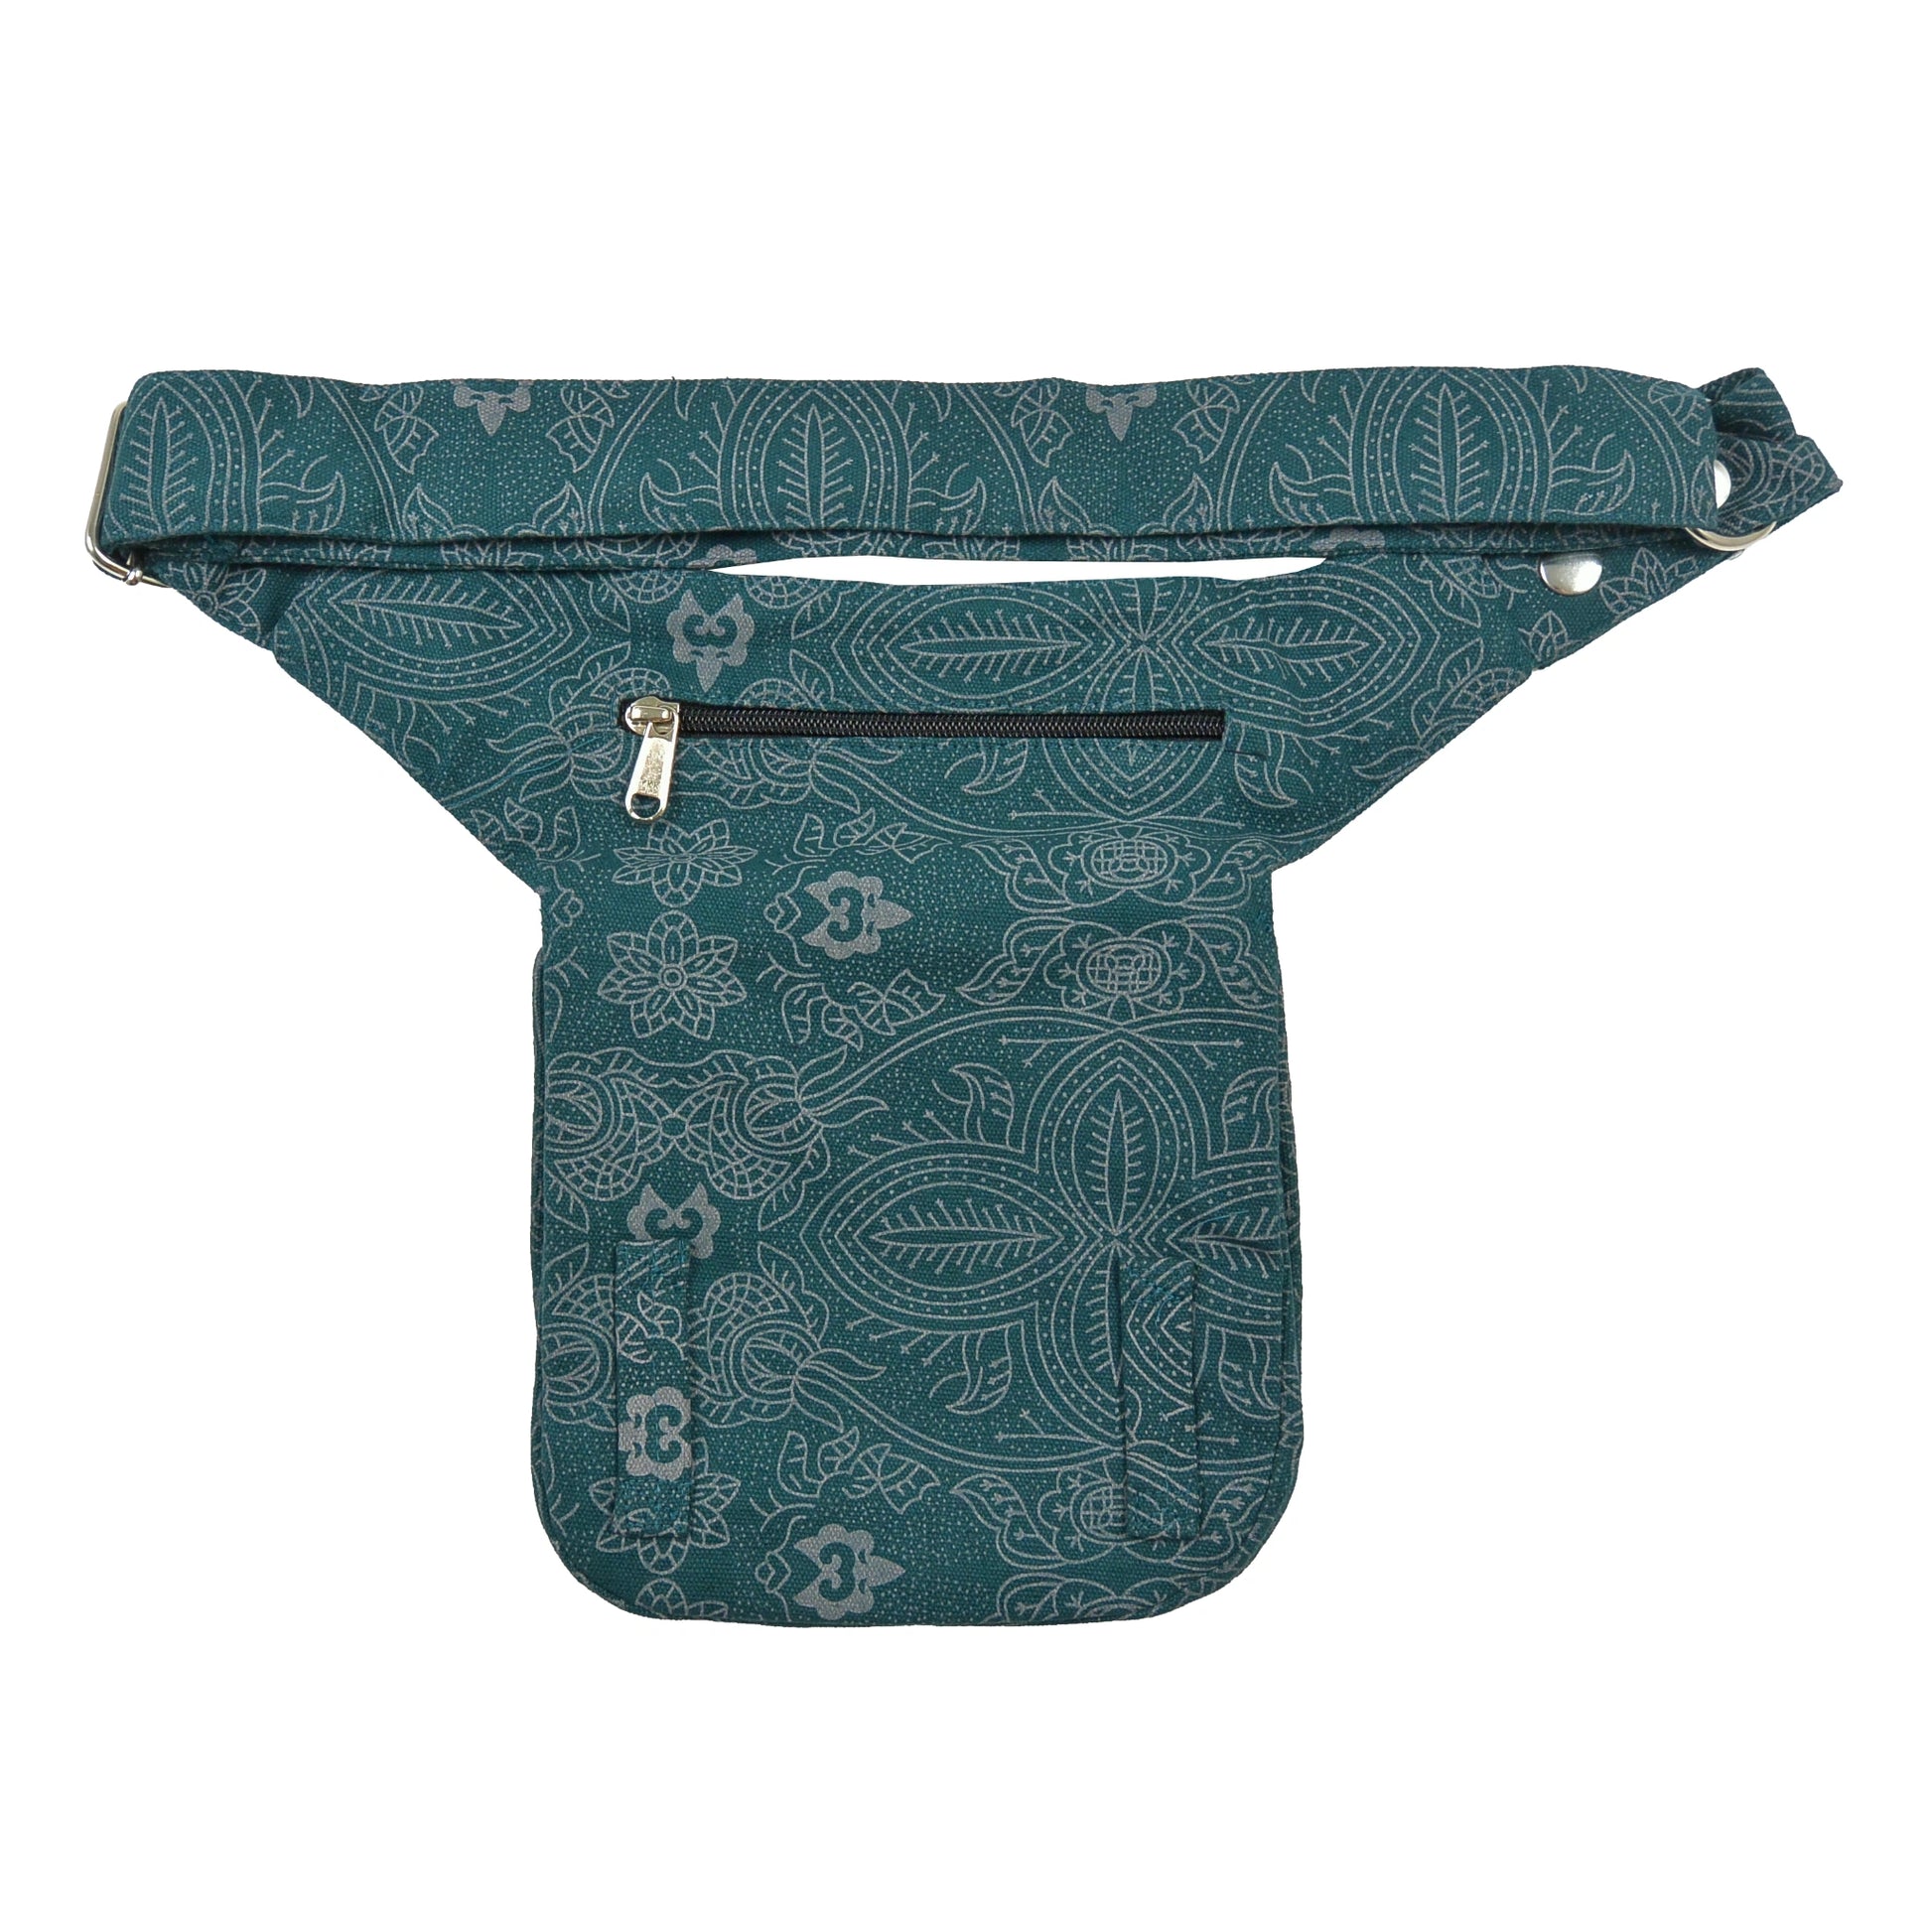 Bauchtasche Hüfttasche Stoff Baumwolle in Petrol, Grün mit Ornamenten und Rosenmuster Mix mit Reißverschlussfach auf der hinteren Seite.